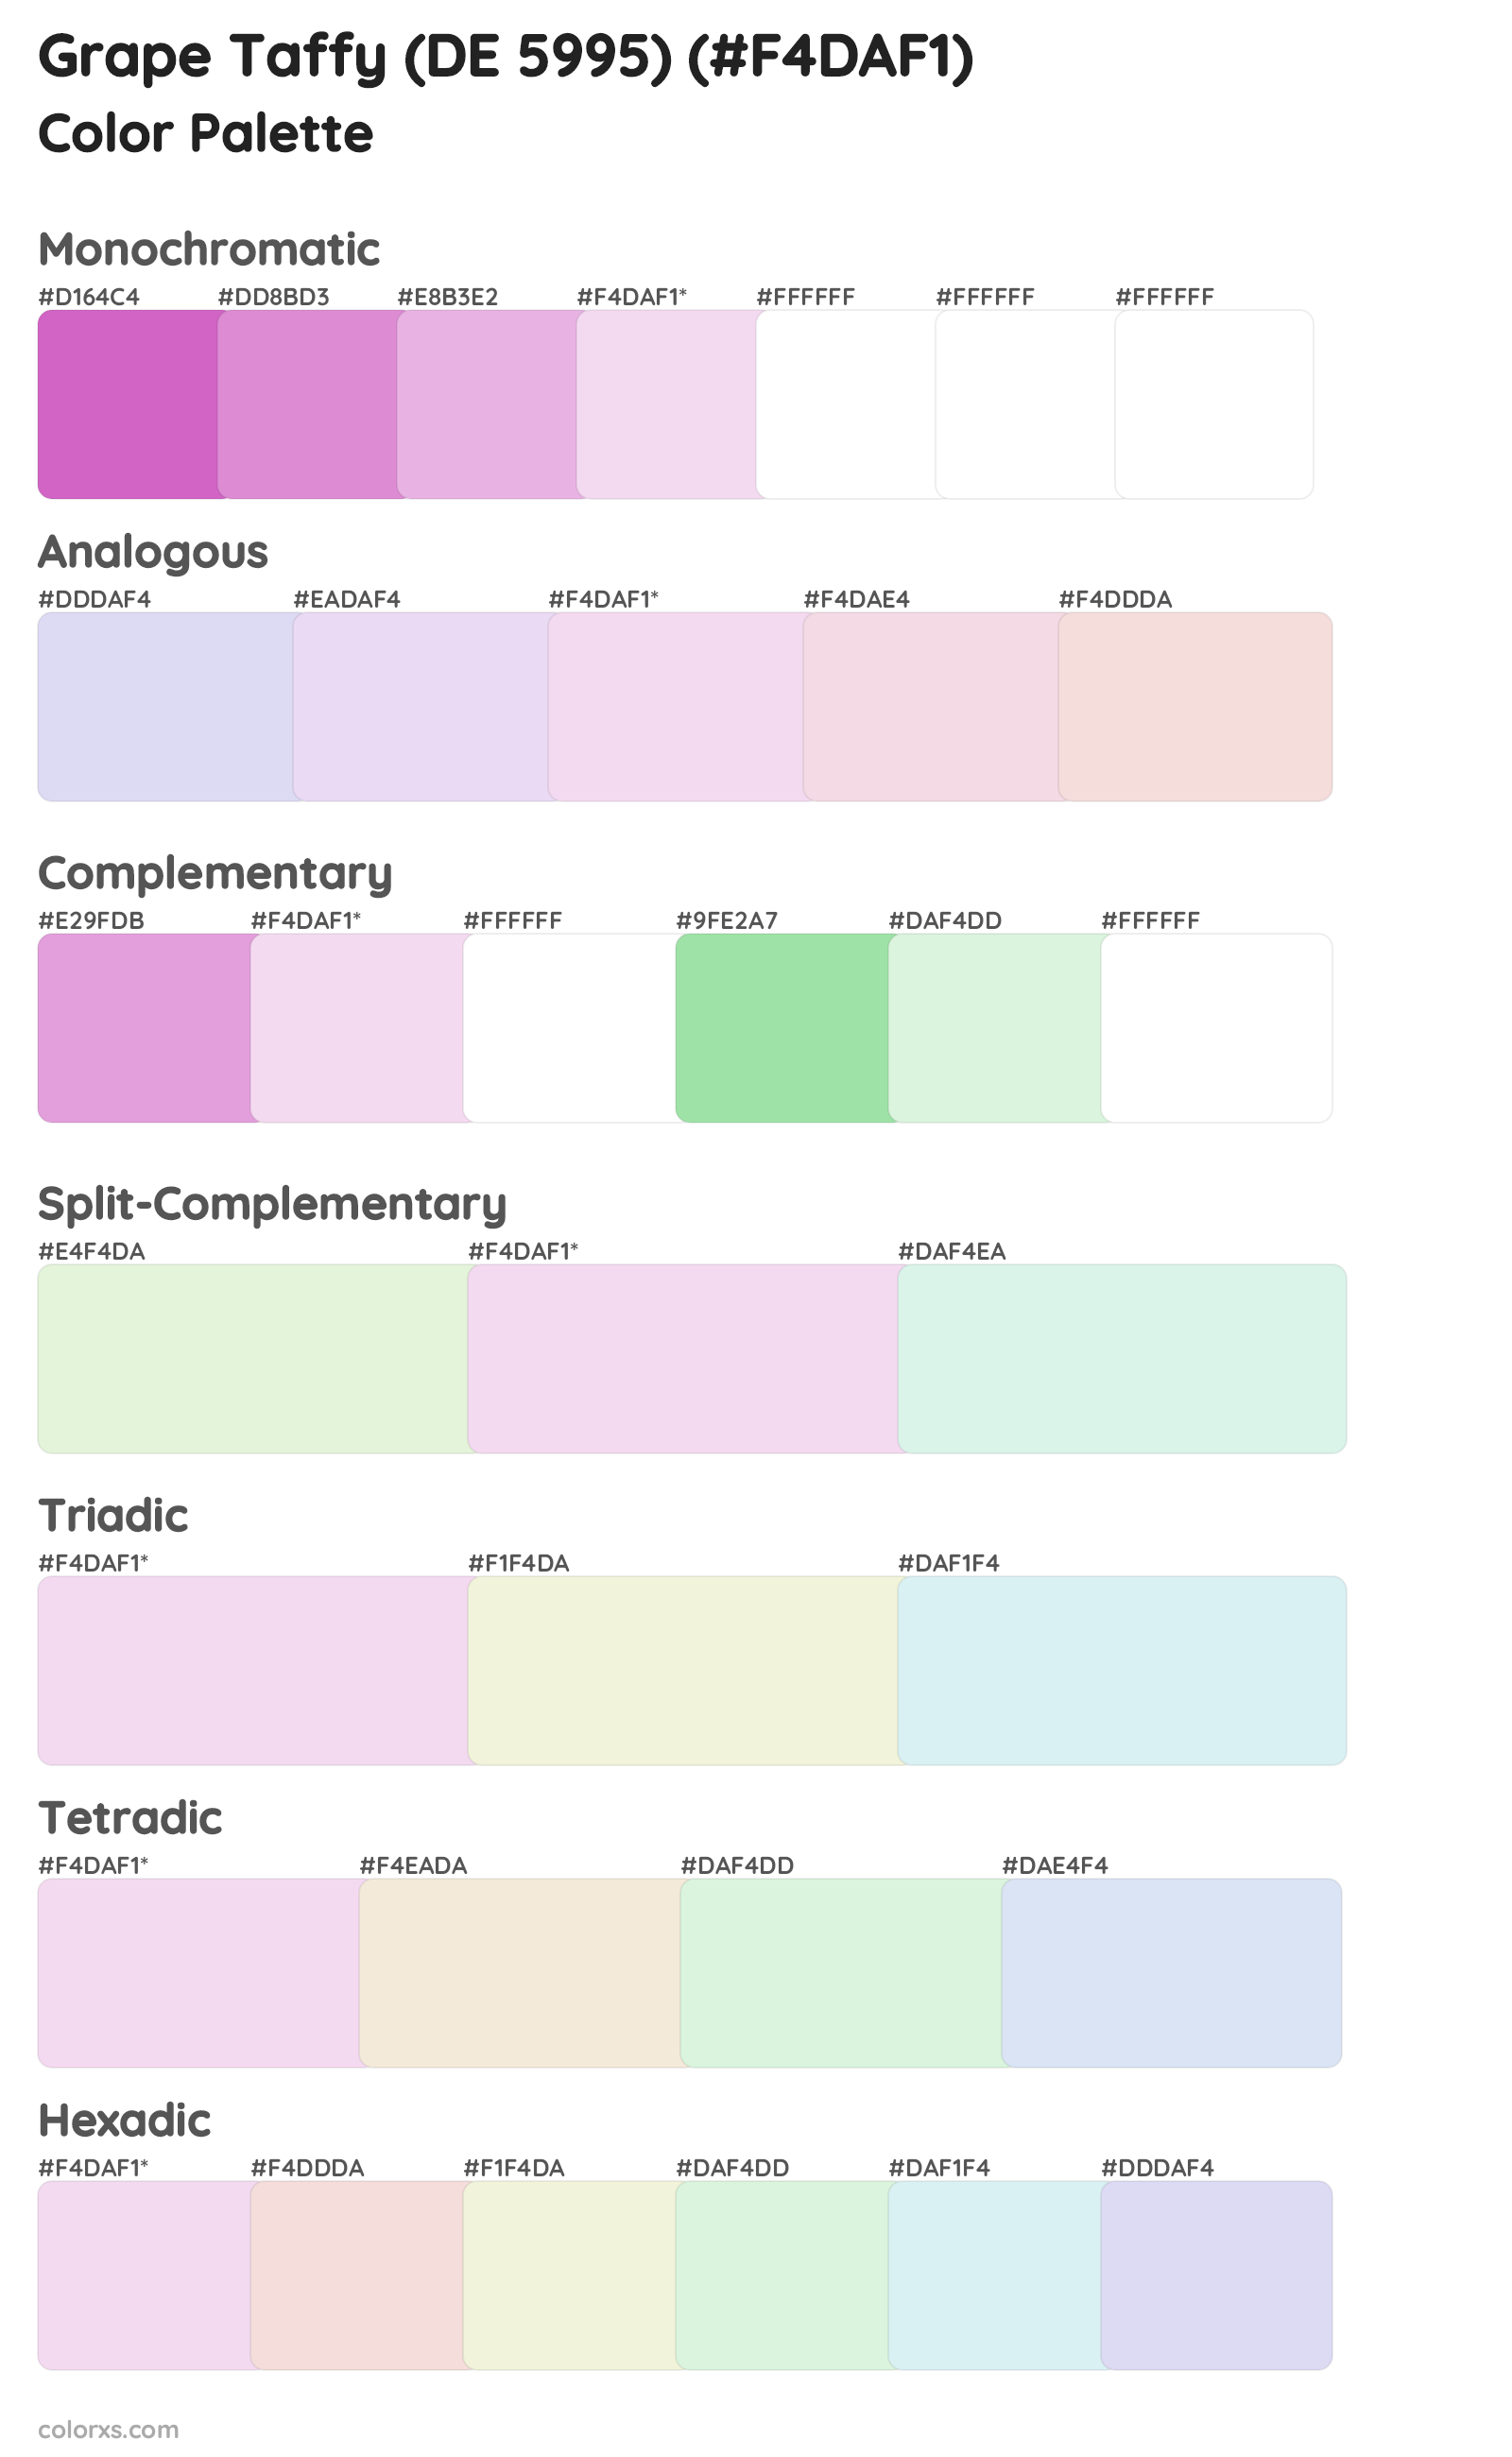 Grape Taffy (DE 5995) Color Scheme Palettes